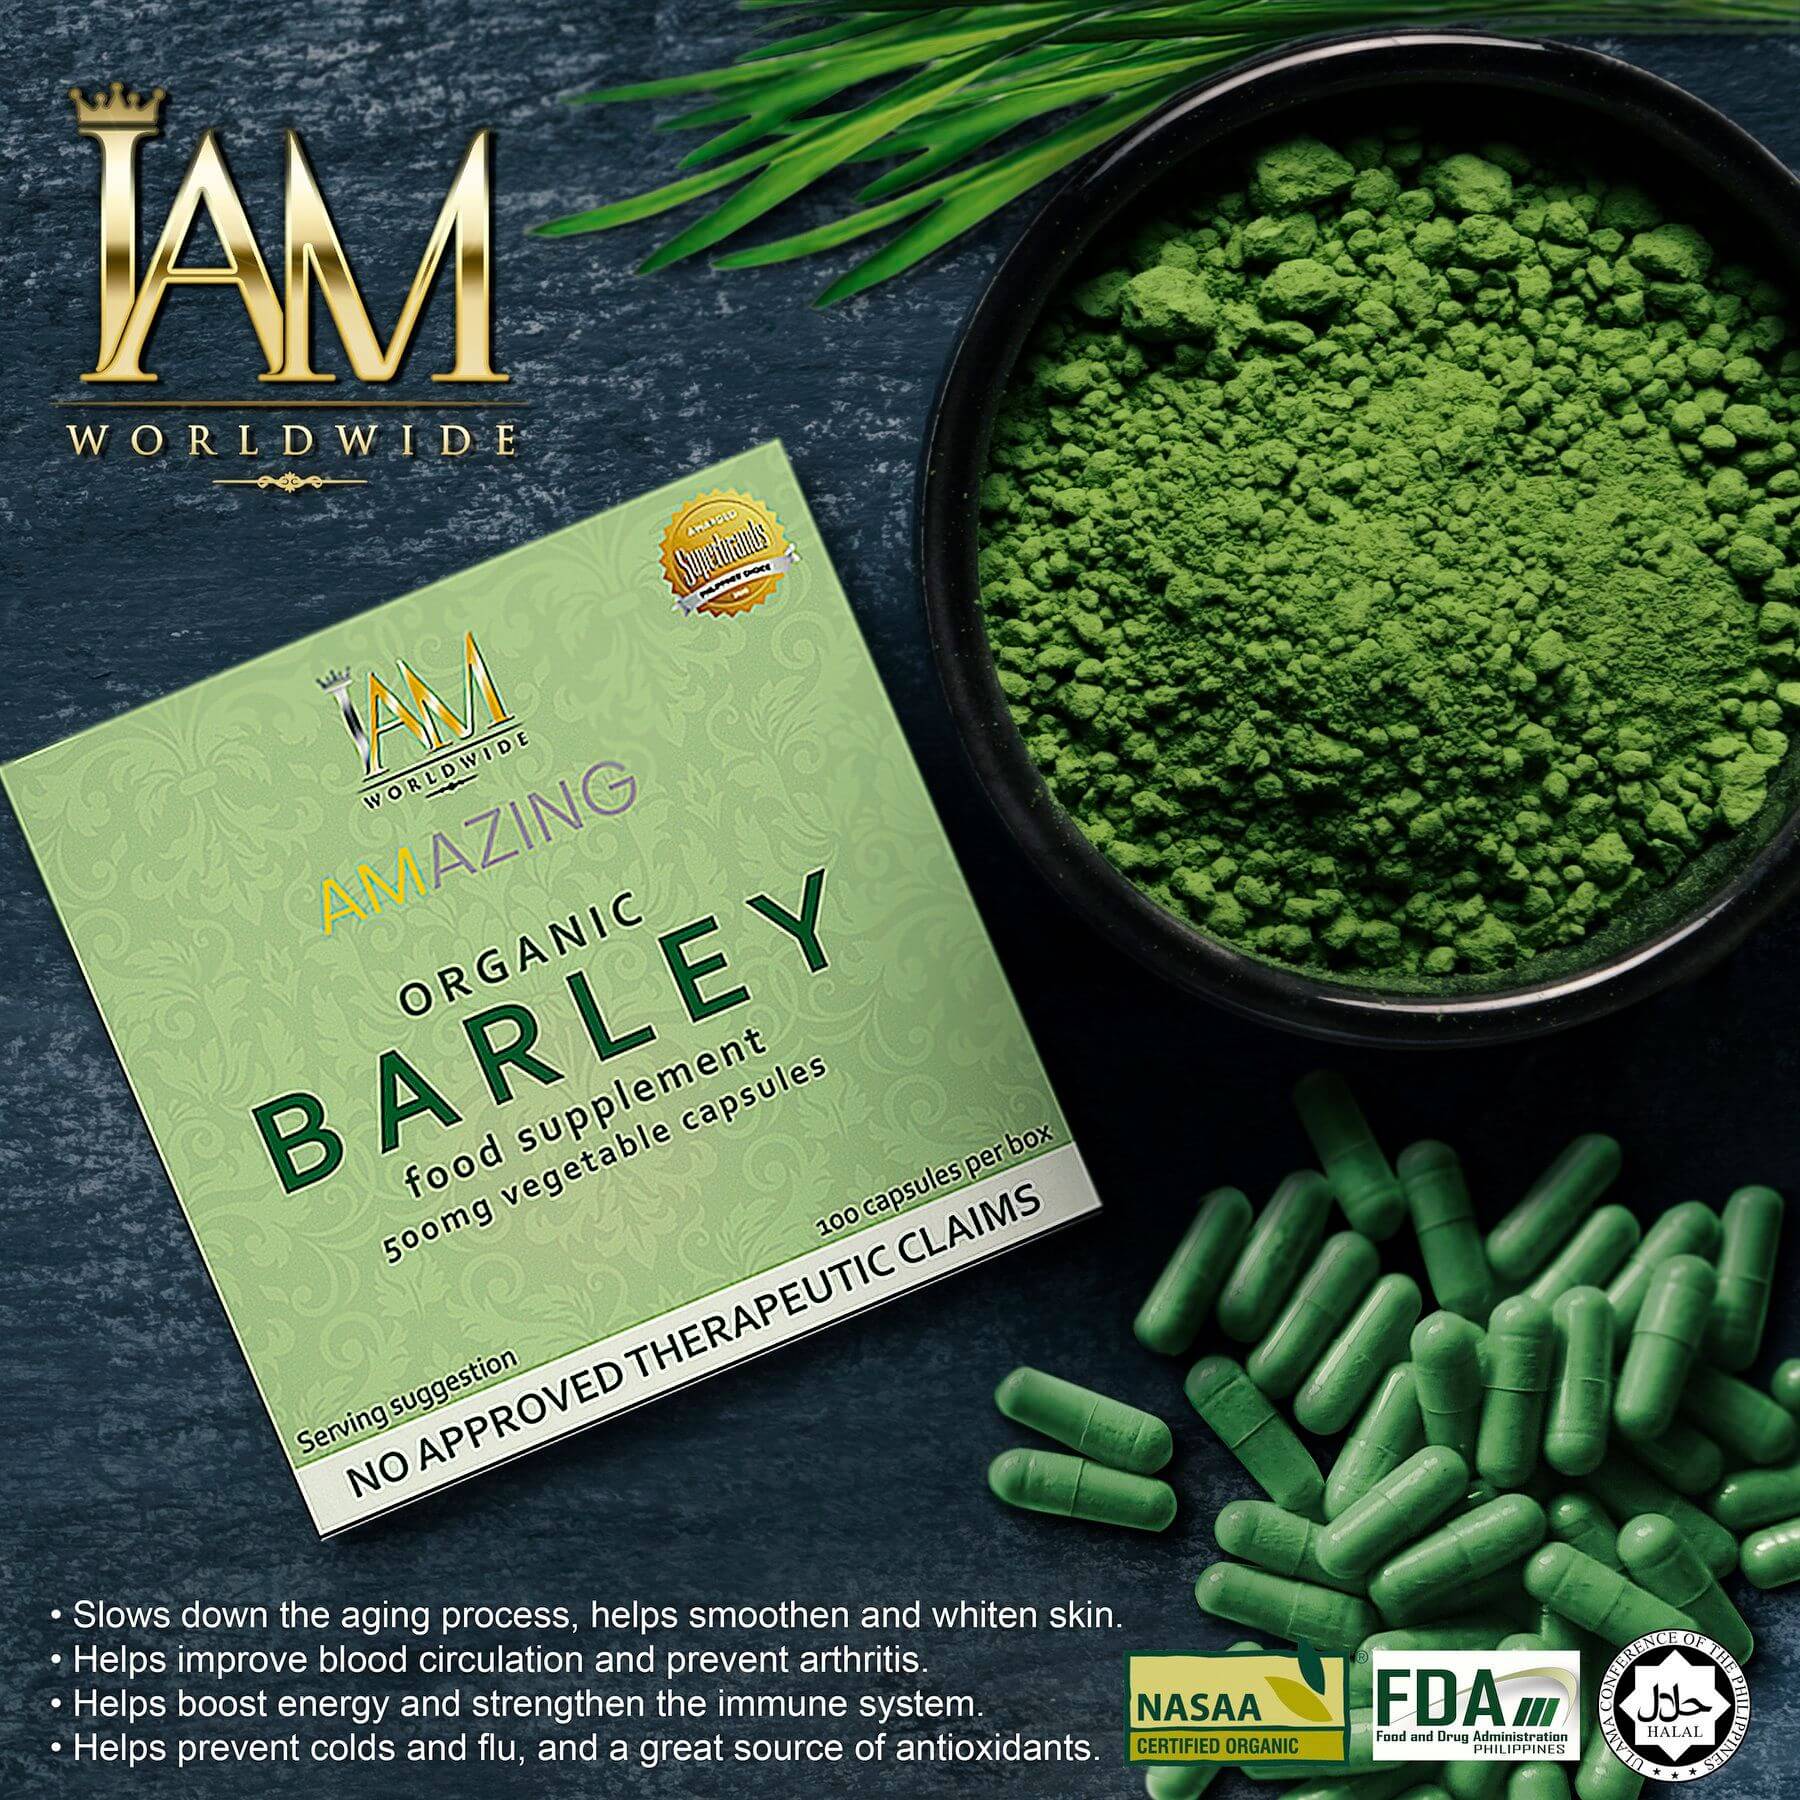 Amazing Pure Organic Barley Capsule – IAM Worldwide Online Store PH